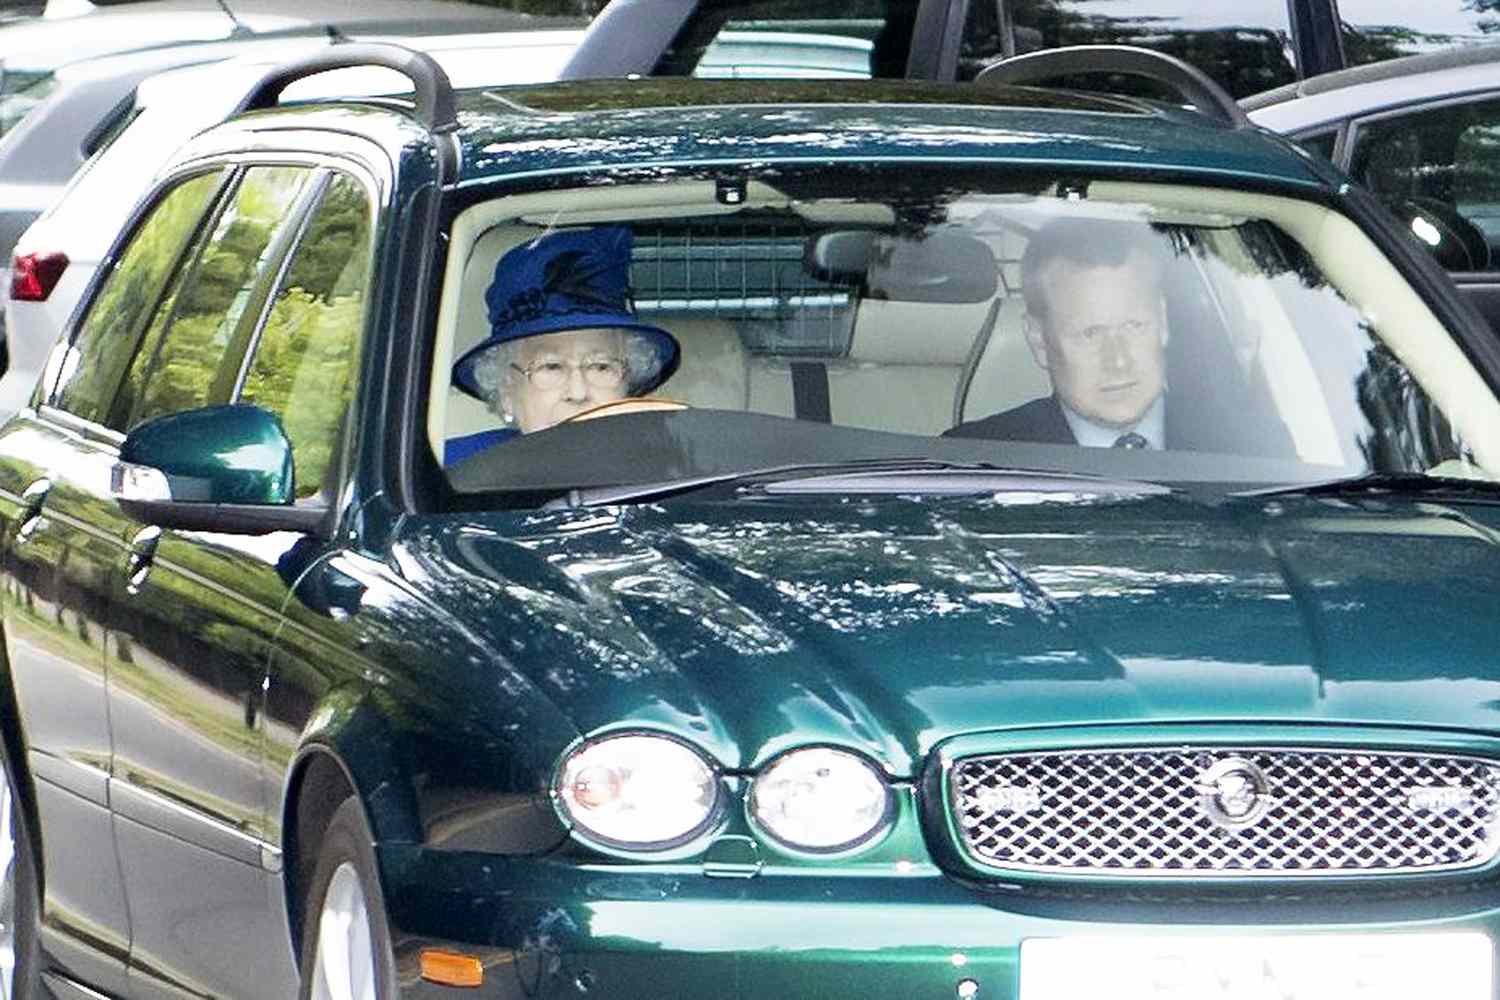 Queen Elizabeth II driving on public road, Windsor, Berkshire, UK - 07 May 2017